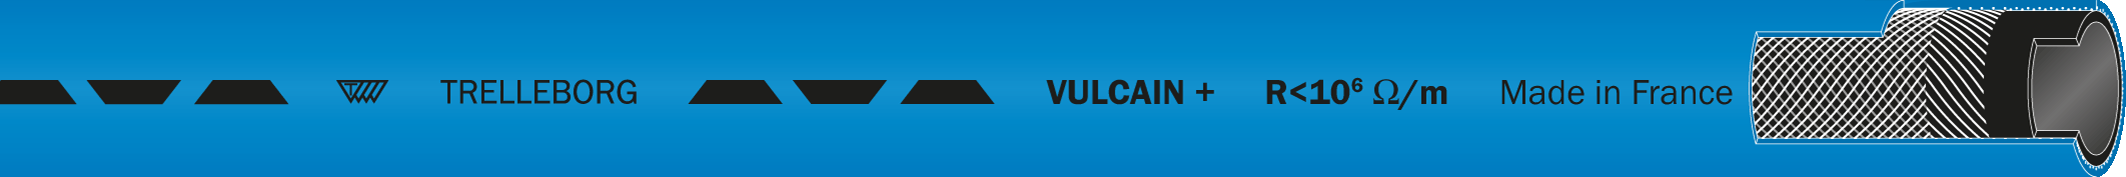 VULCAINplus_TSALES_300dpi_gif_180mmx15mm